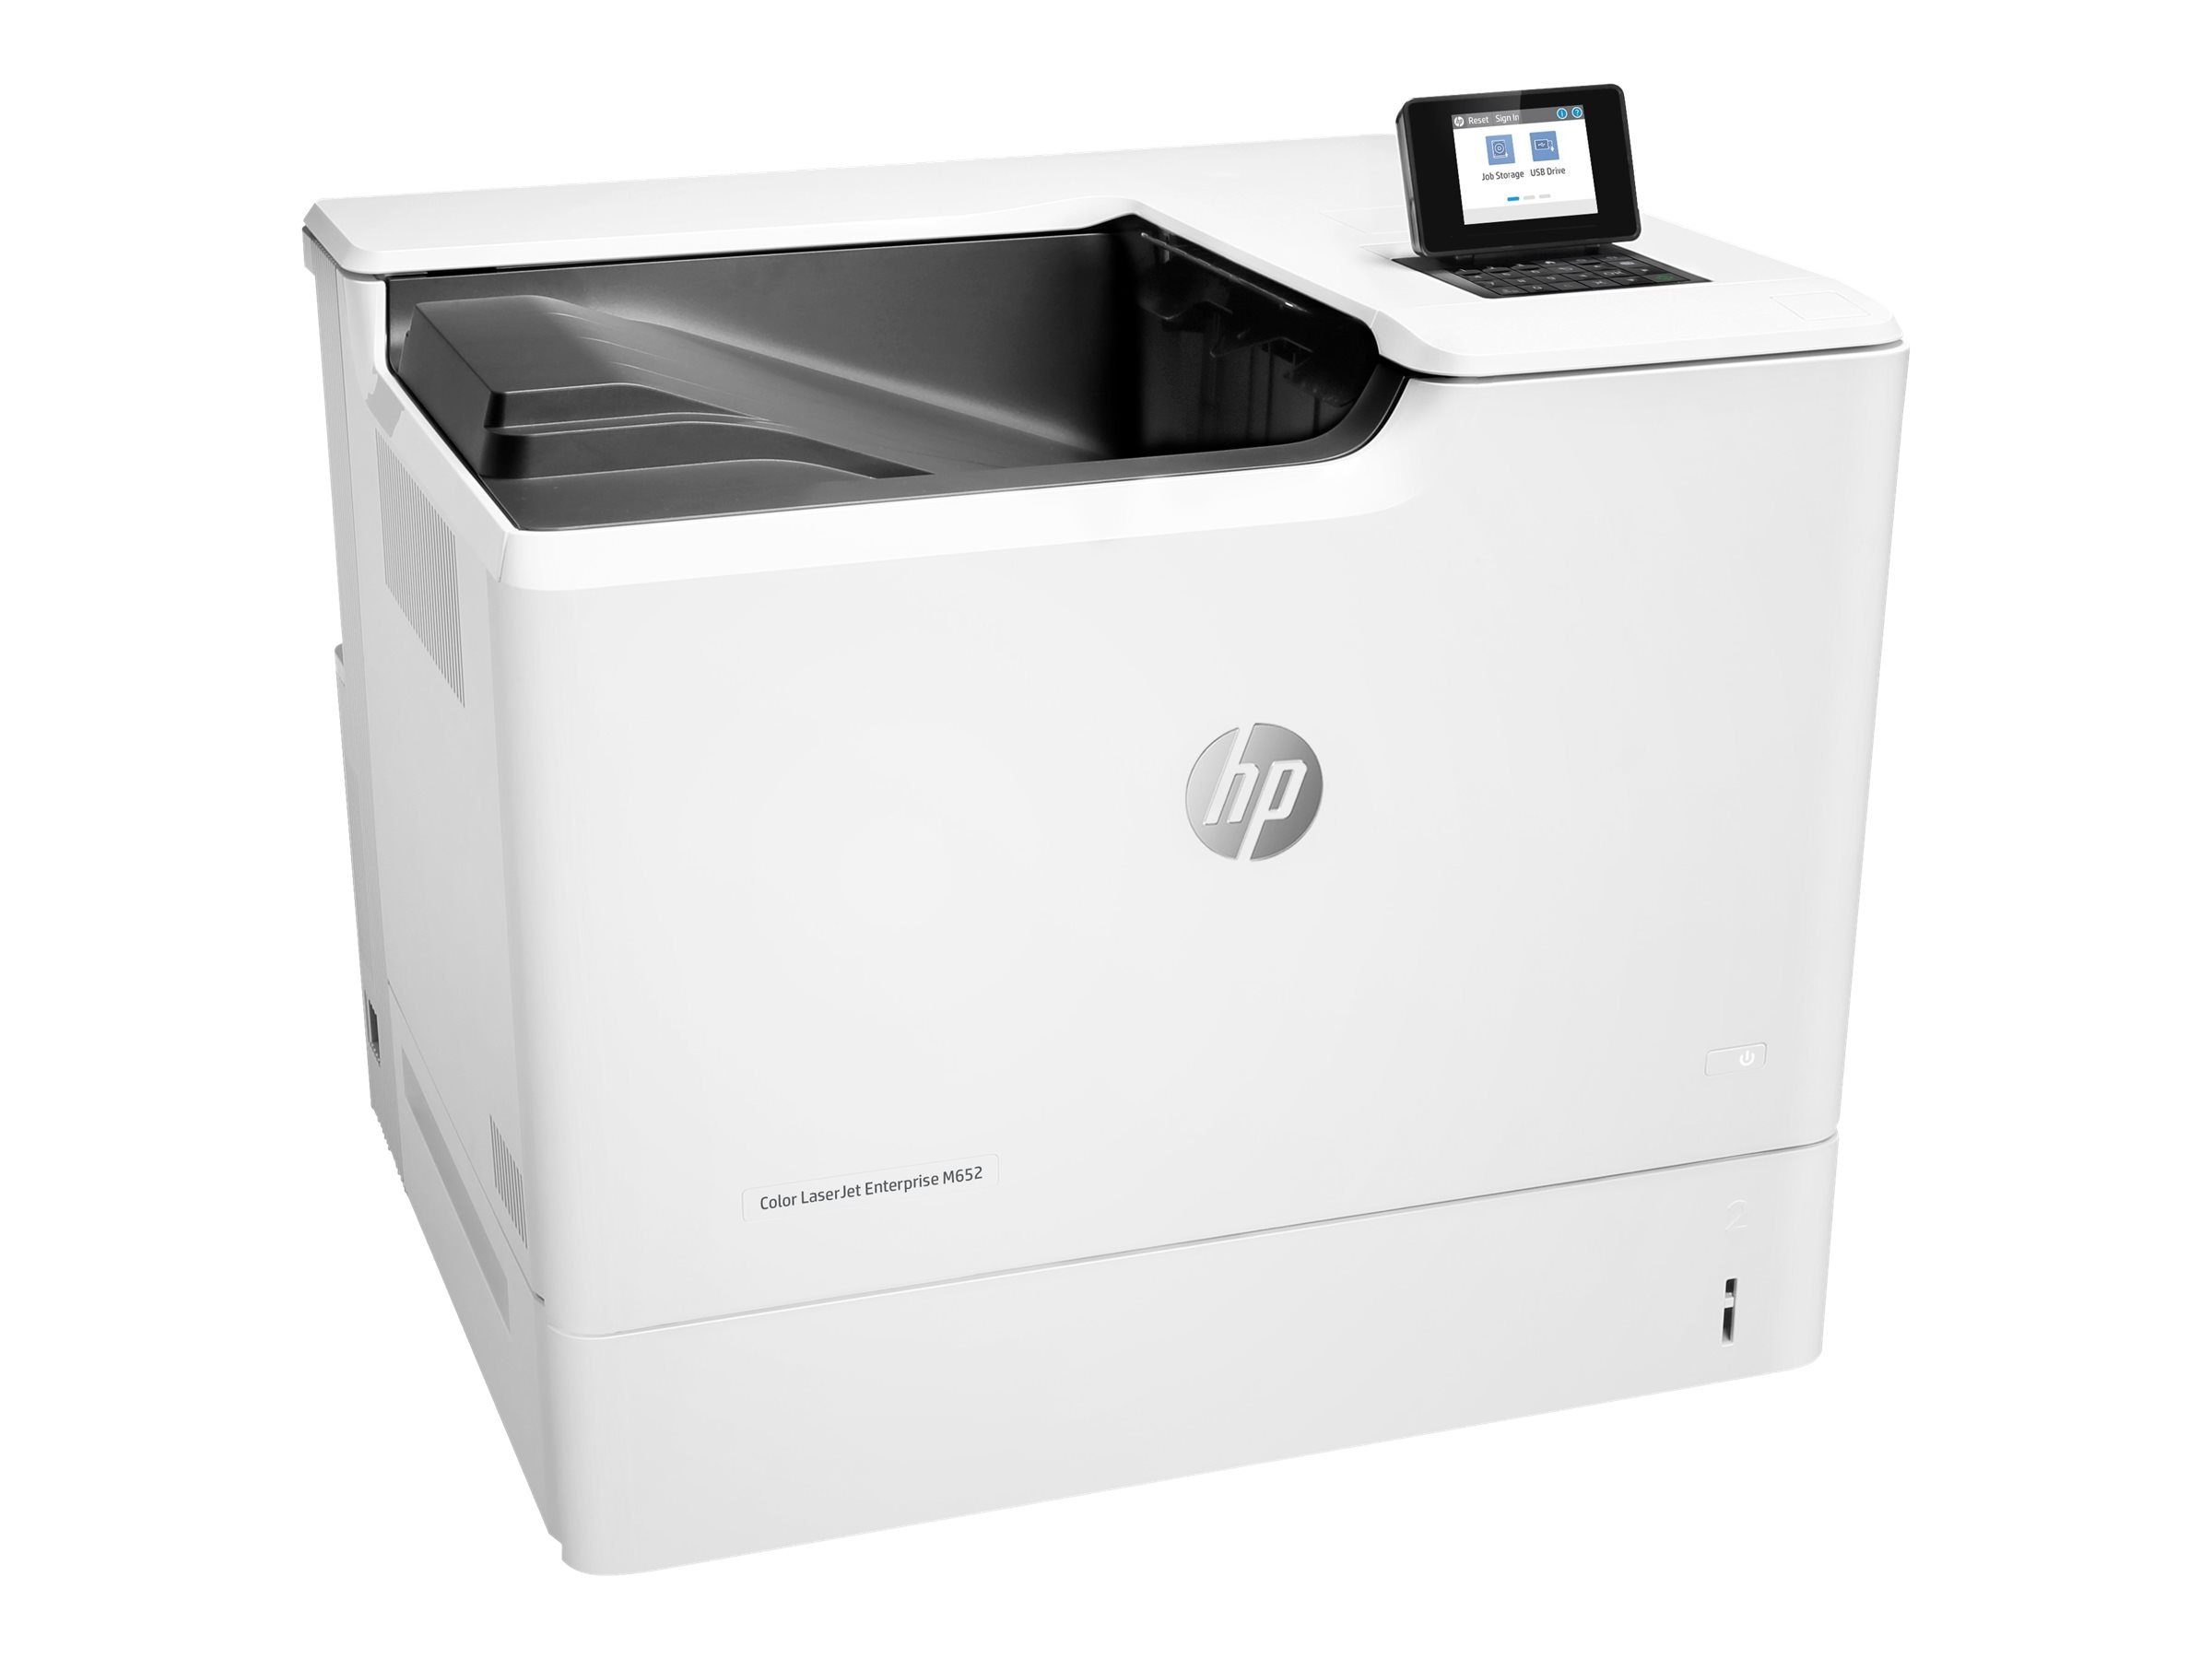 Máy in HP Color LaserJet Enterprise M652dn sẽ khiến bạn thích thú với chất lượng in ấn chuyên nghiệp đến từ thương hiệu nổi tiếng. Hãy ngắm nhìn hình ảnh chi tiết của máy để có thể tự tin lựa chọn cho mình một sản phẩm chất lượng. 